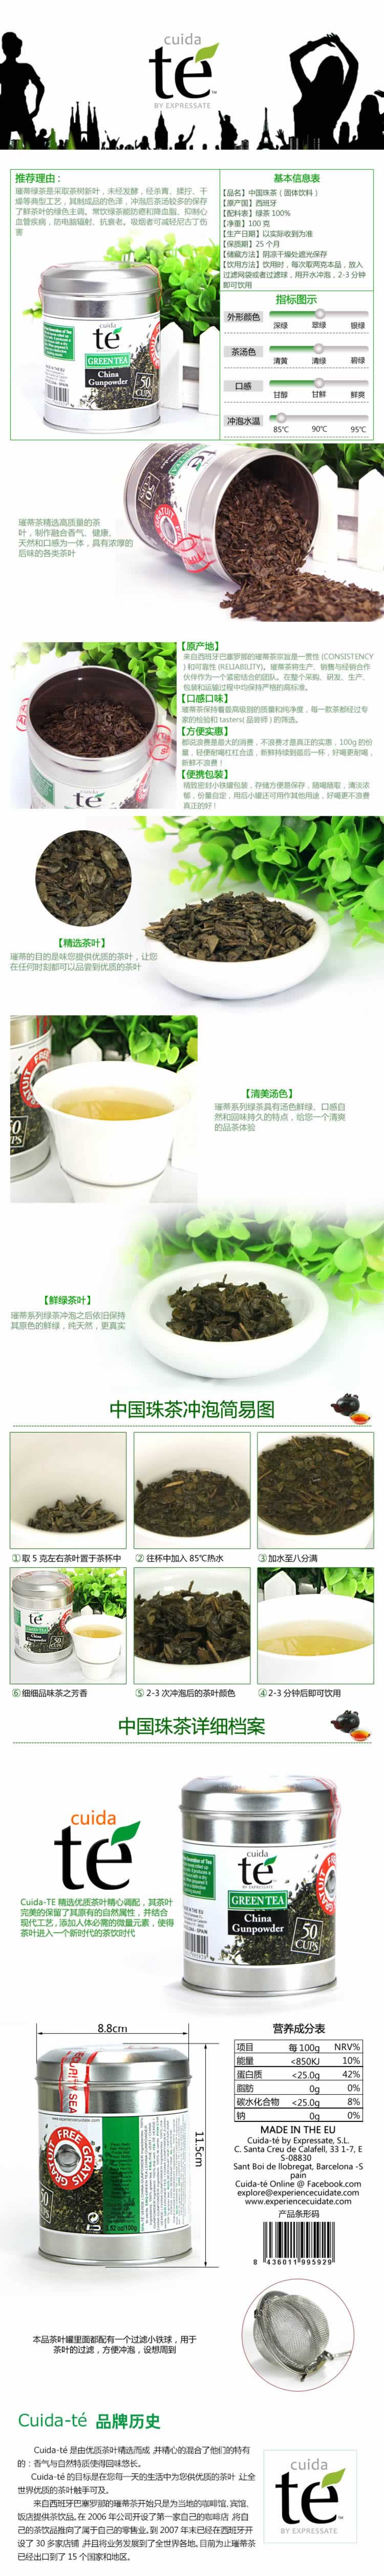 中国珠茶固体饮料茶叶包装描述模板